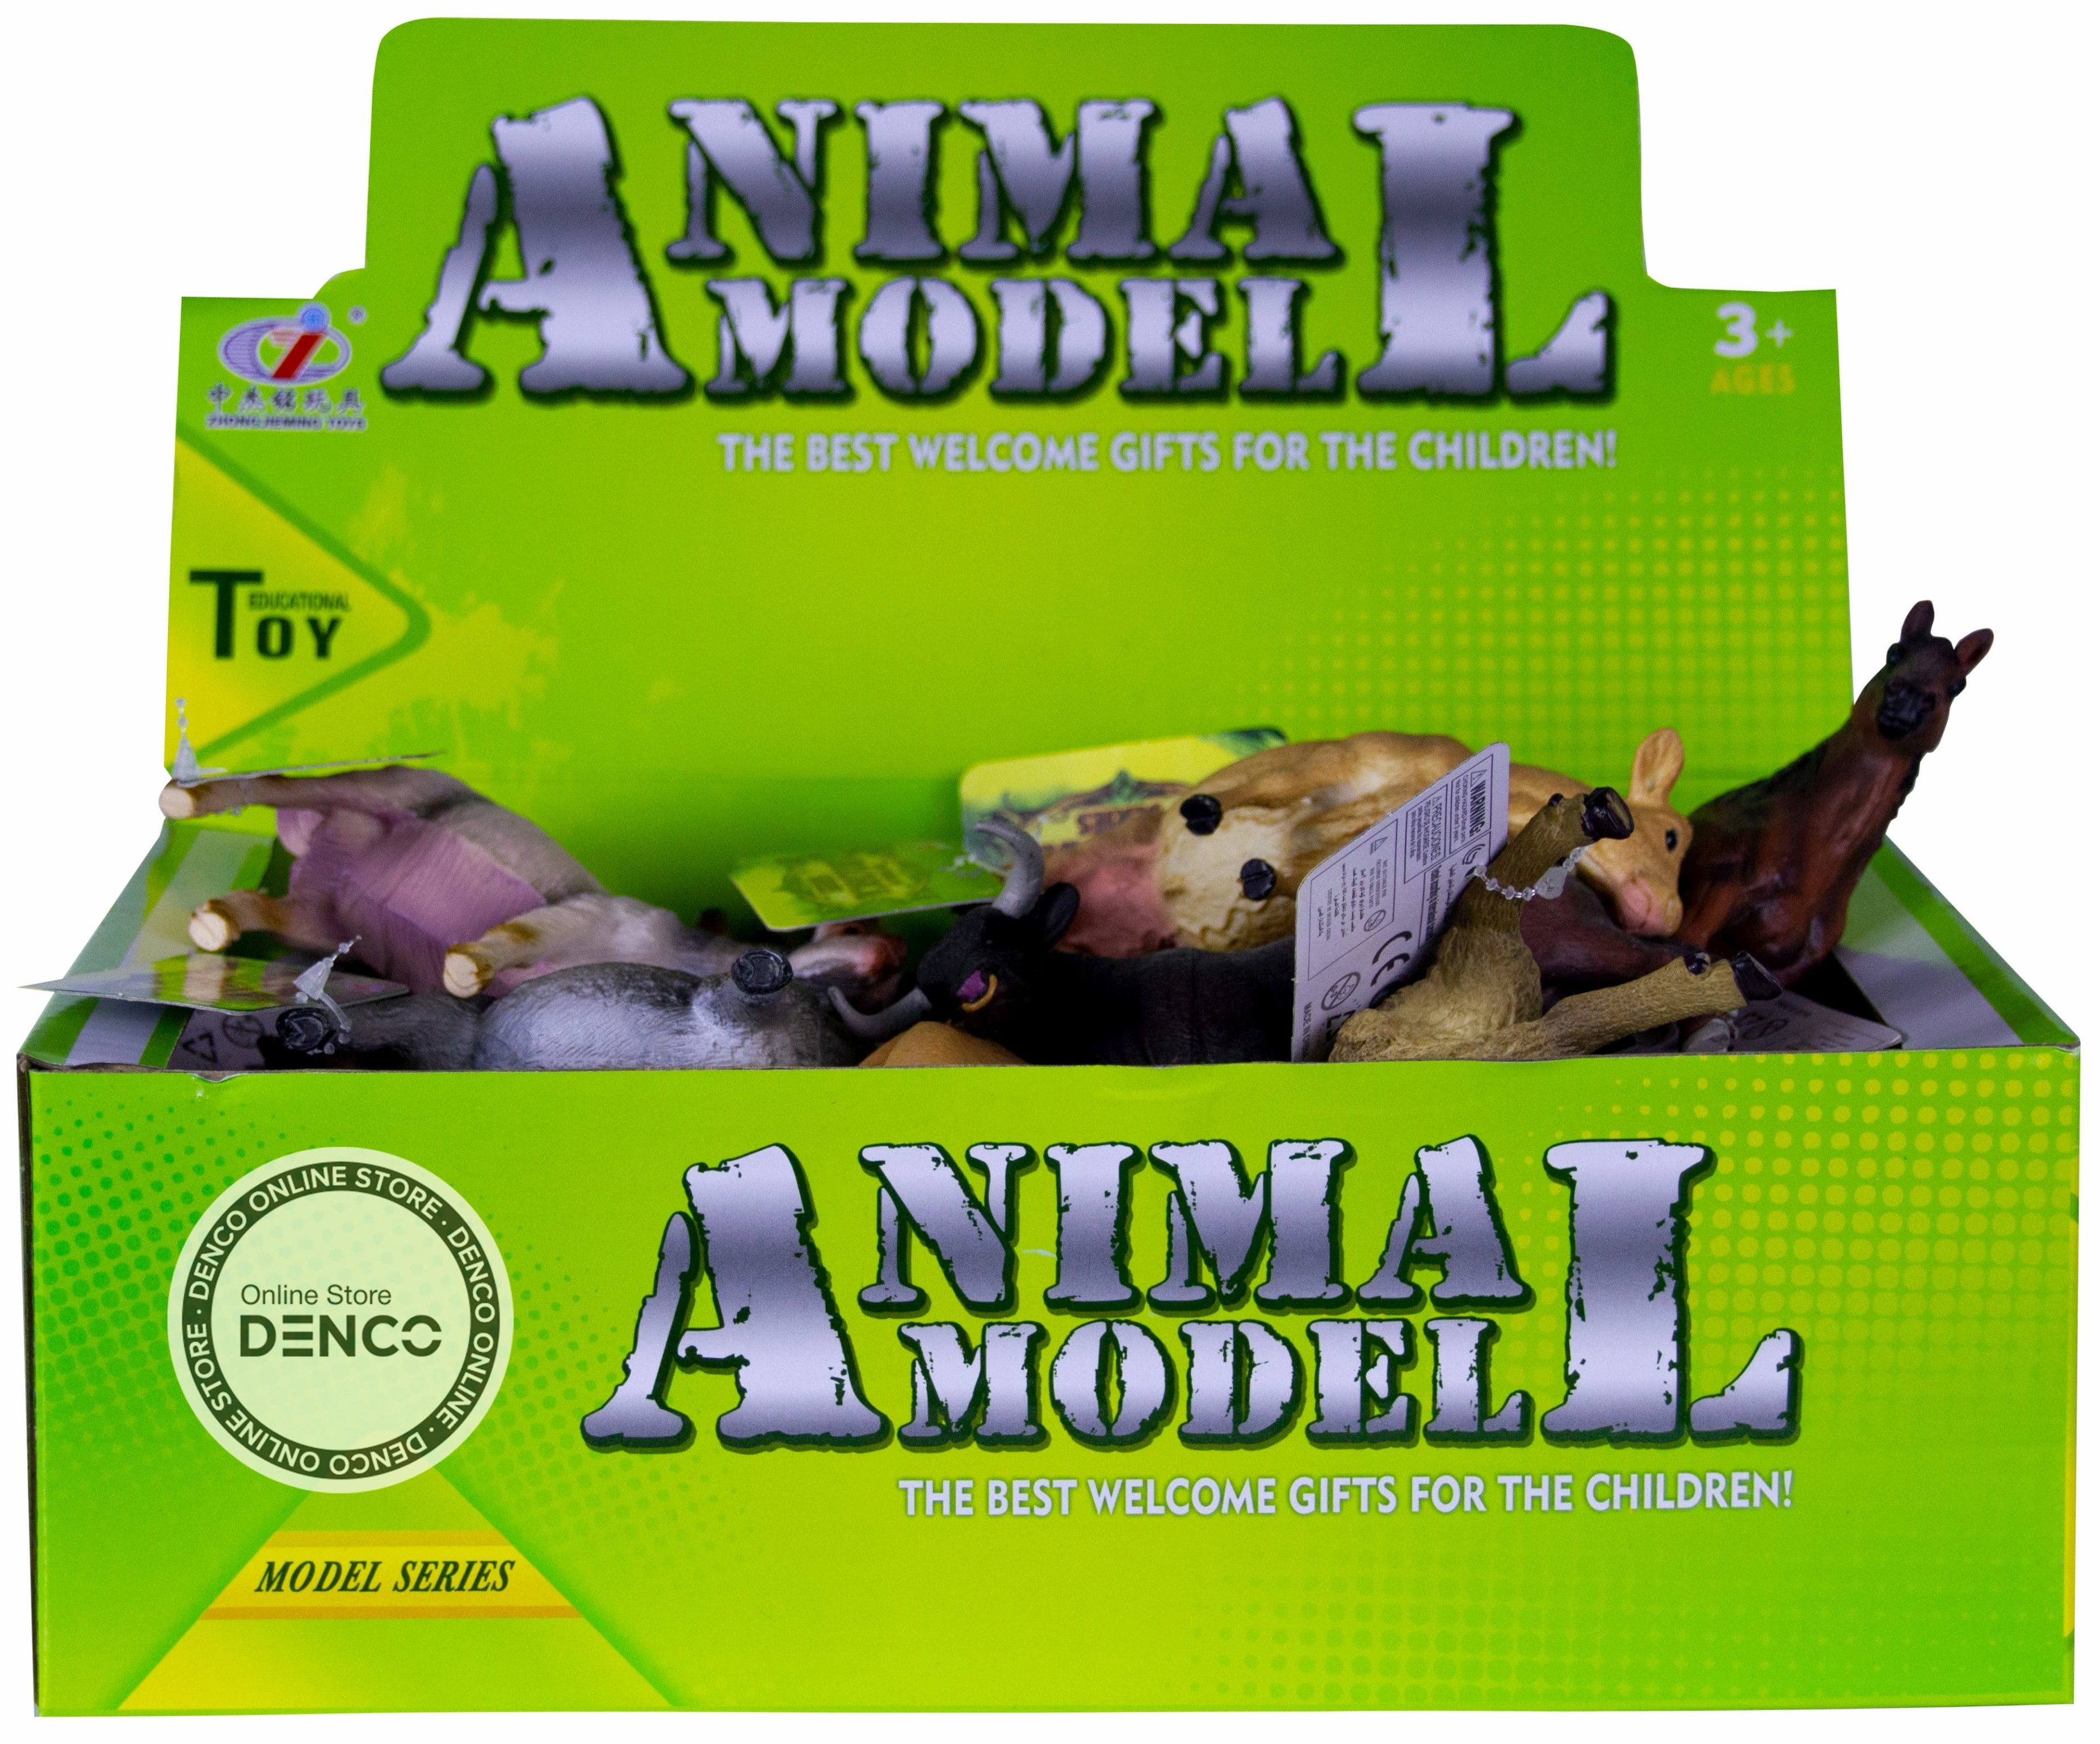 Фигурки животных «Домашние животные с фермы» Q9899-279 Animal Model 10-12 см. / 6 шт.